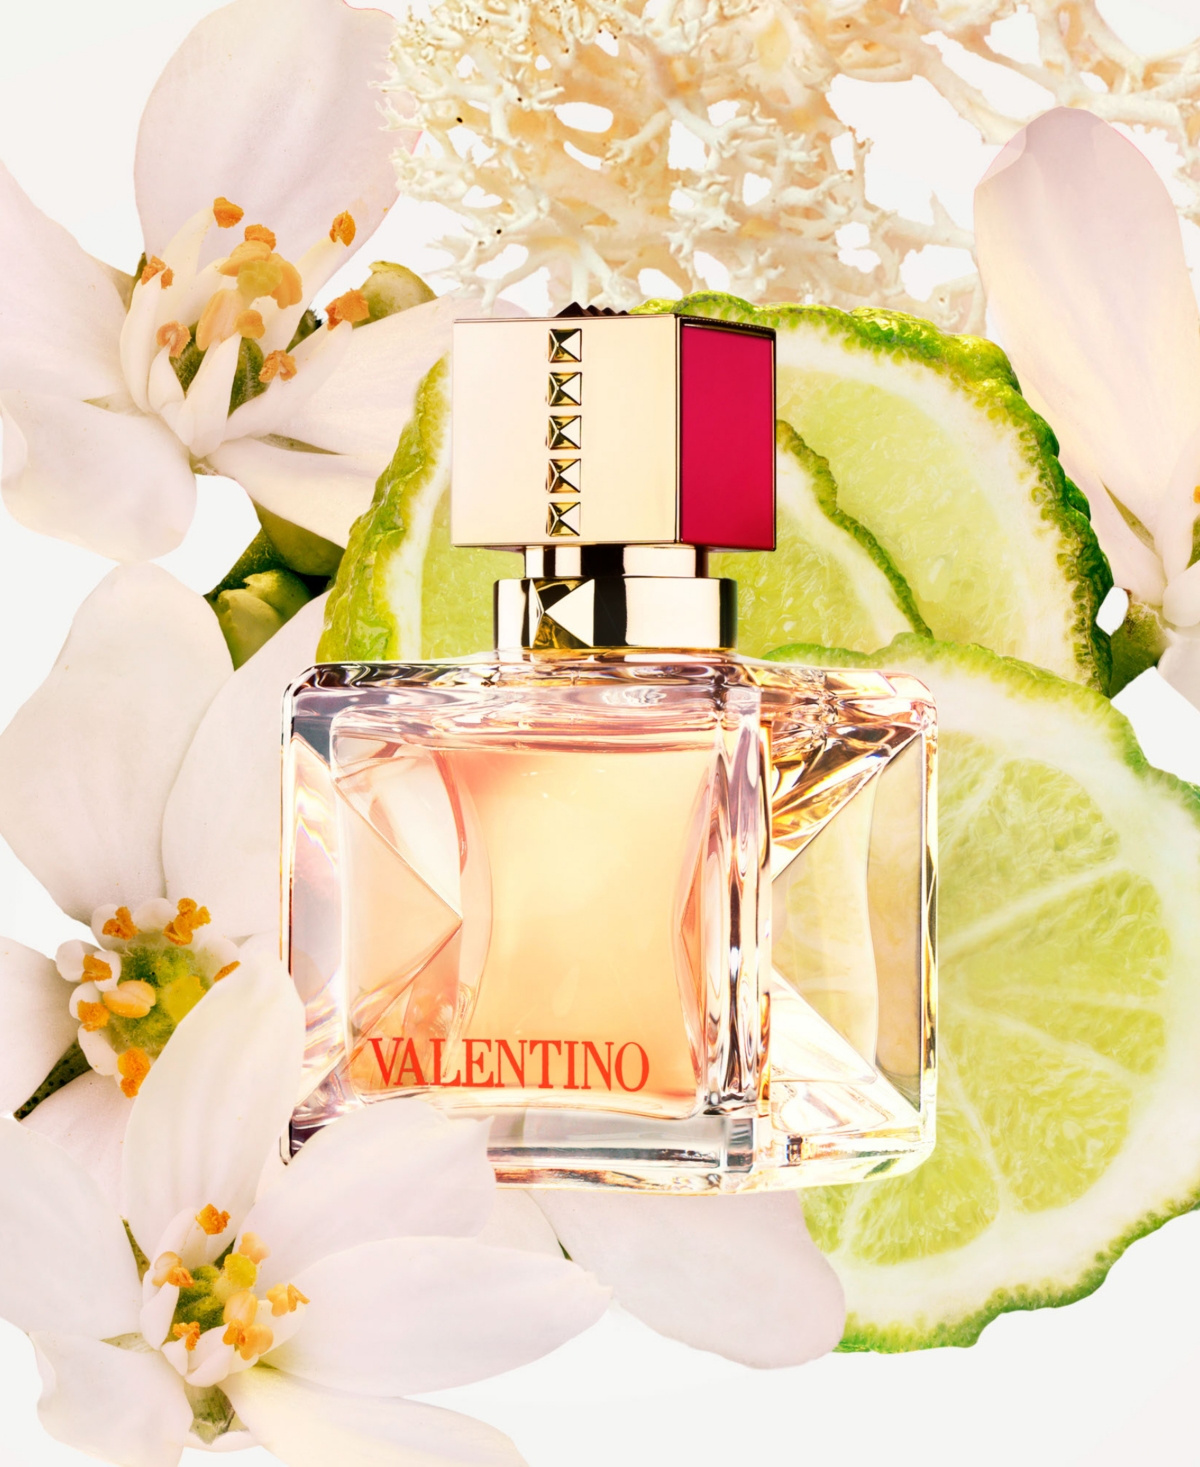 Shop Valentino 2-pc. Voce Viva Eau De Parfum Gift Set In No Color